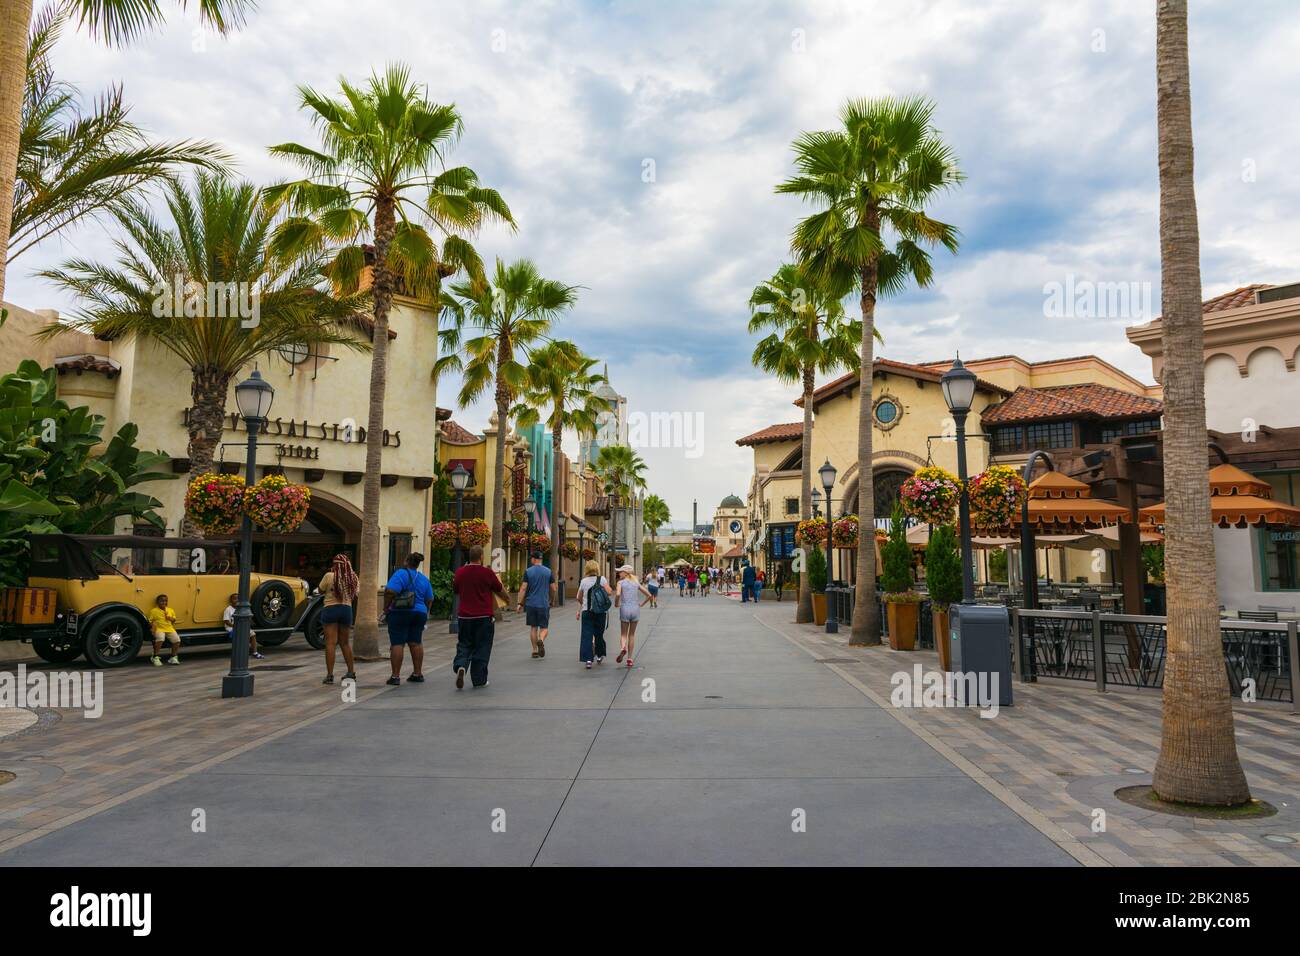 Los Angeles, Californie, États-Unis - 23 juillet 2019 : parc de renommée mondiale Universal Studios à Hollywood Banque D'Images